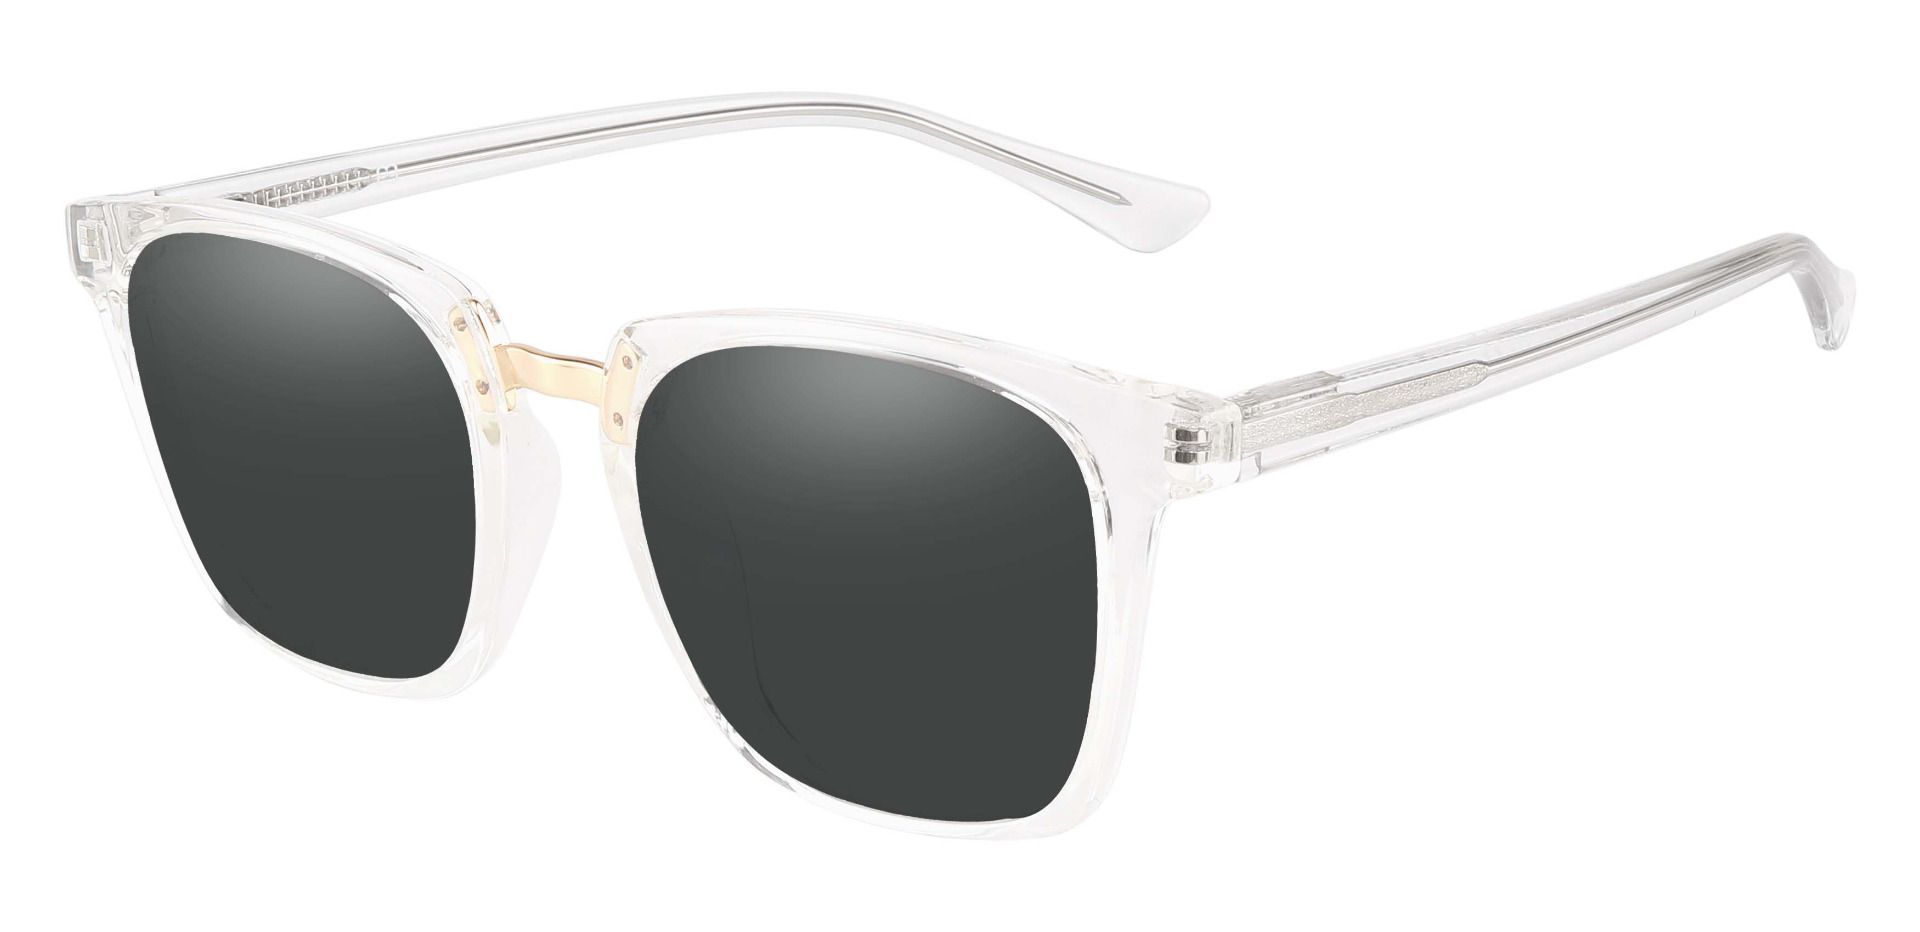 Delta Square Progressive Sunglasses - Clear Frame With Gray Lenses